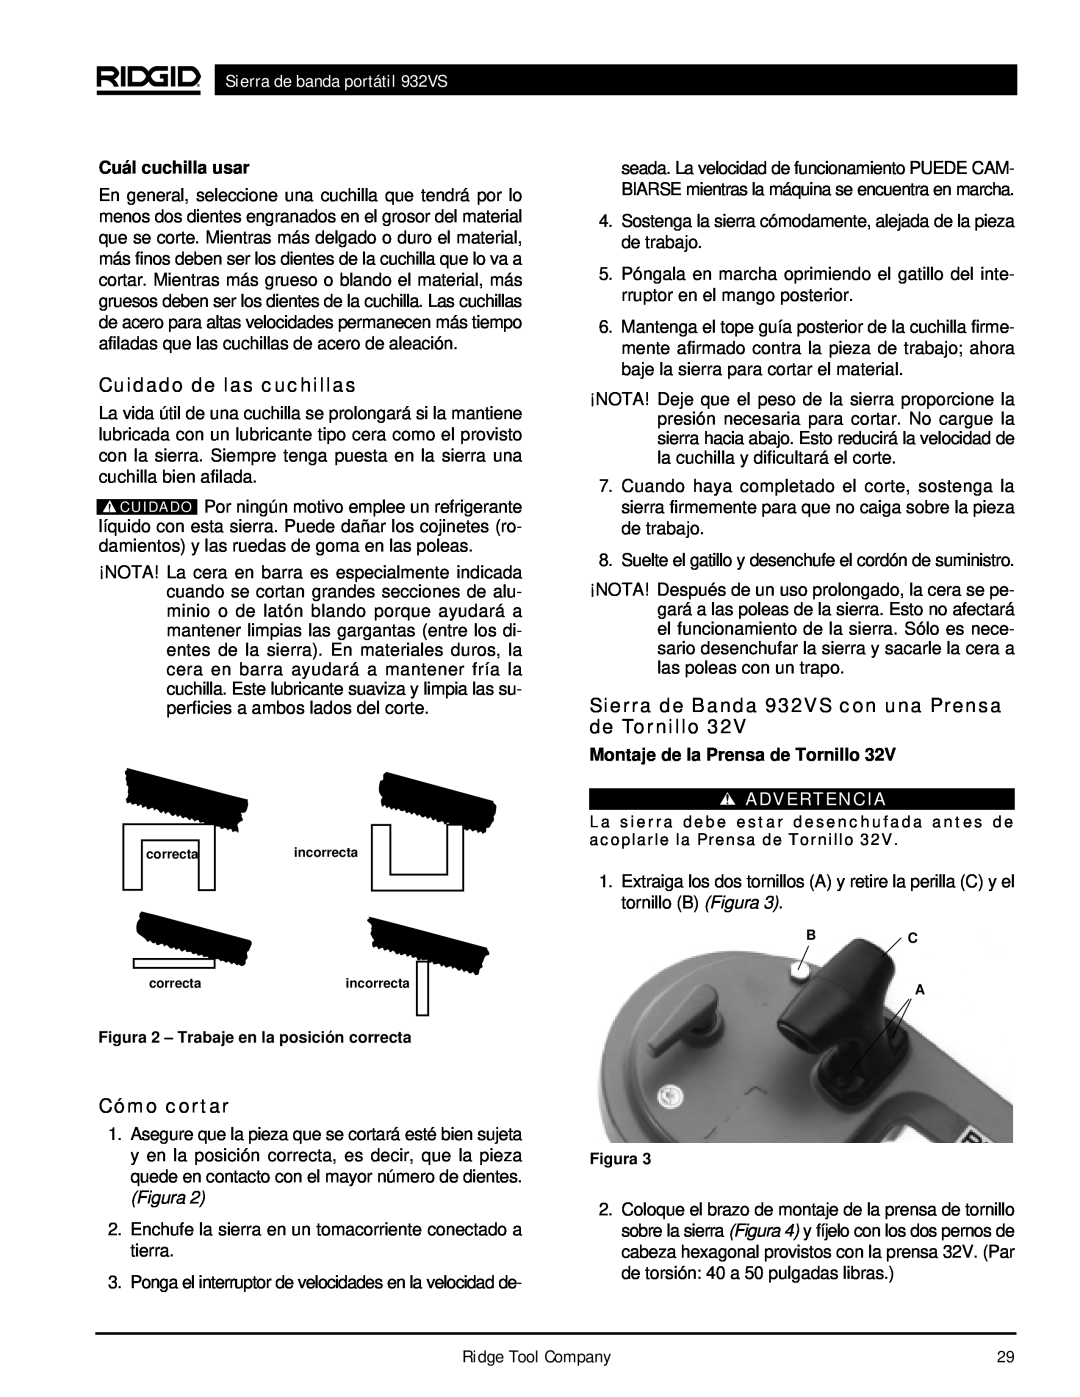 RIDGID manual Cuidado de las cuchillas, Cómo cortar, Sierra de Banda 932VS con una Prensa de Tornillo, Advertencia 